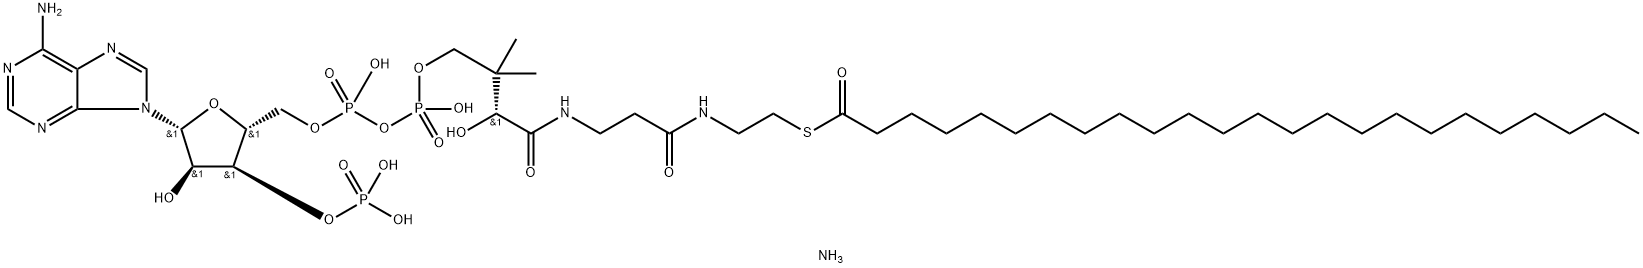 lignoceroyl CoenzyMe A (aMMoniuM salt) Structure